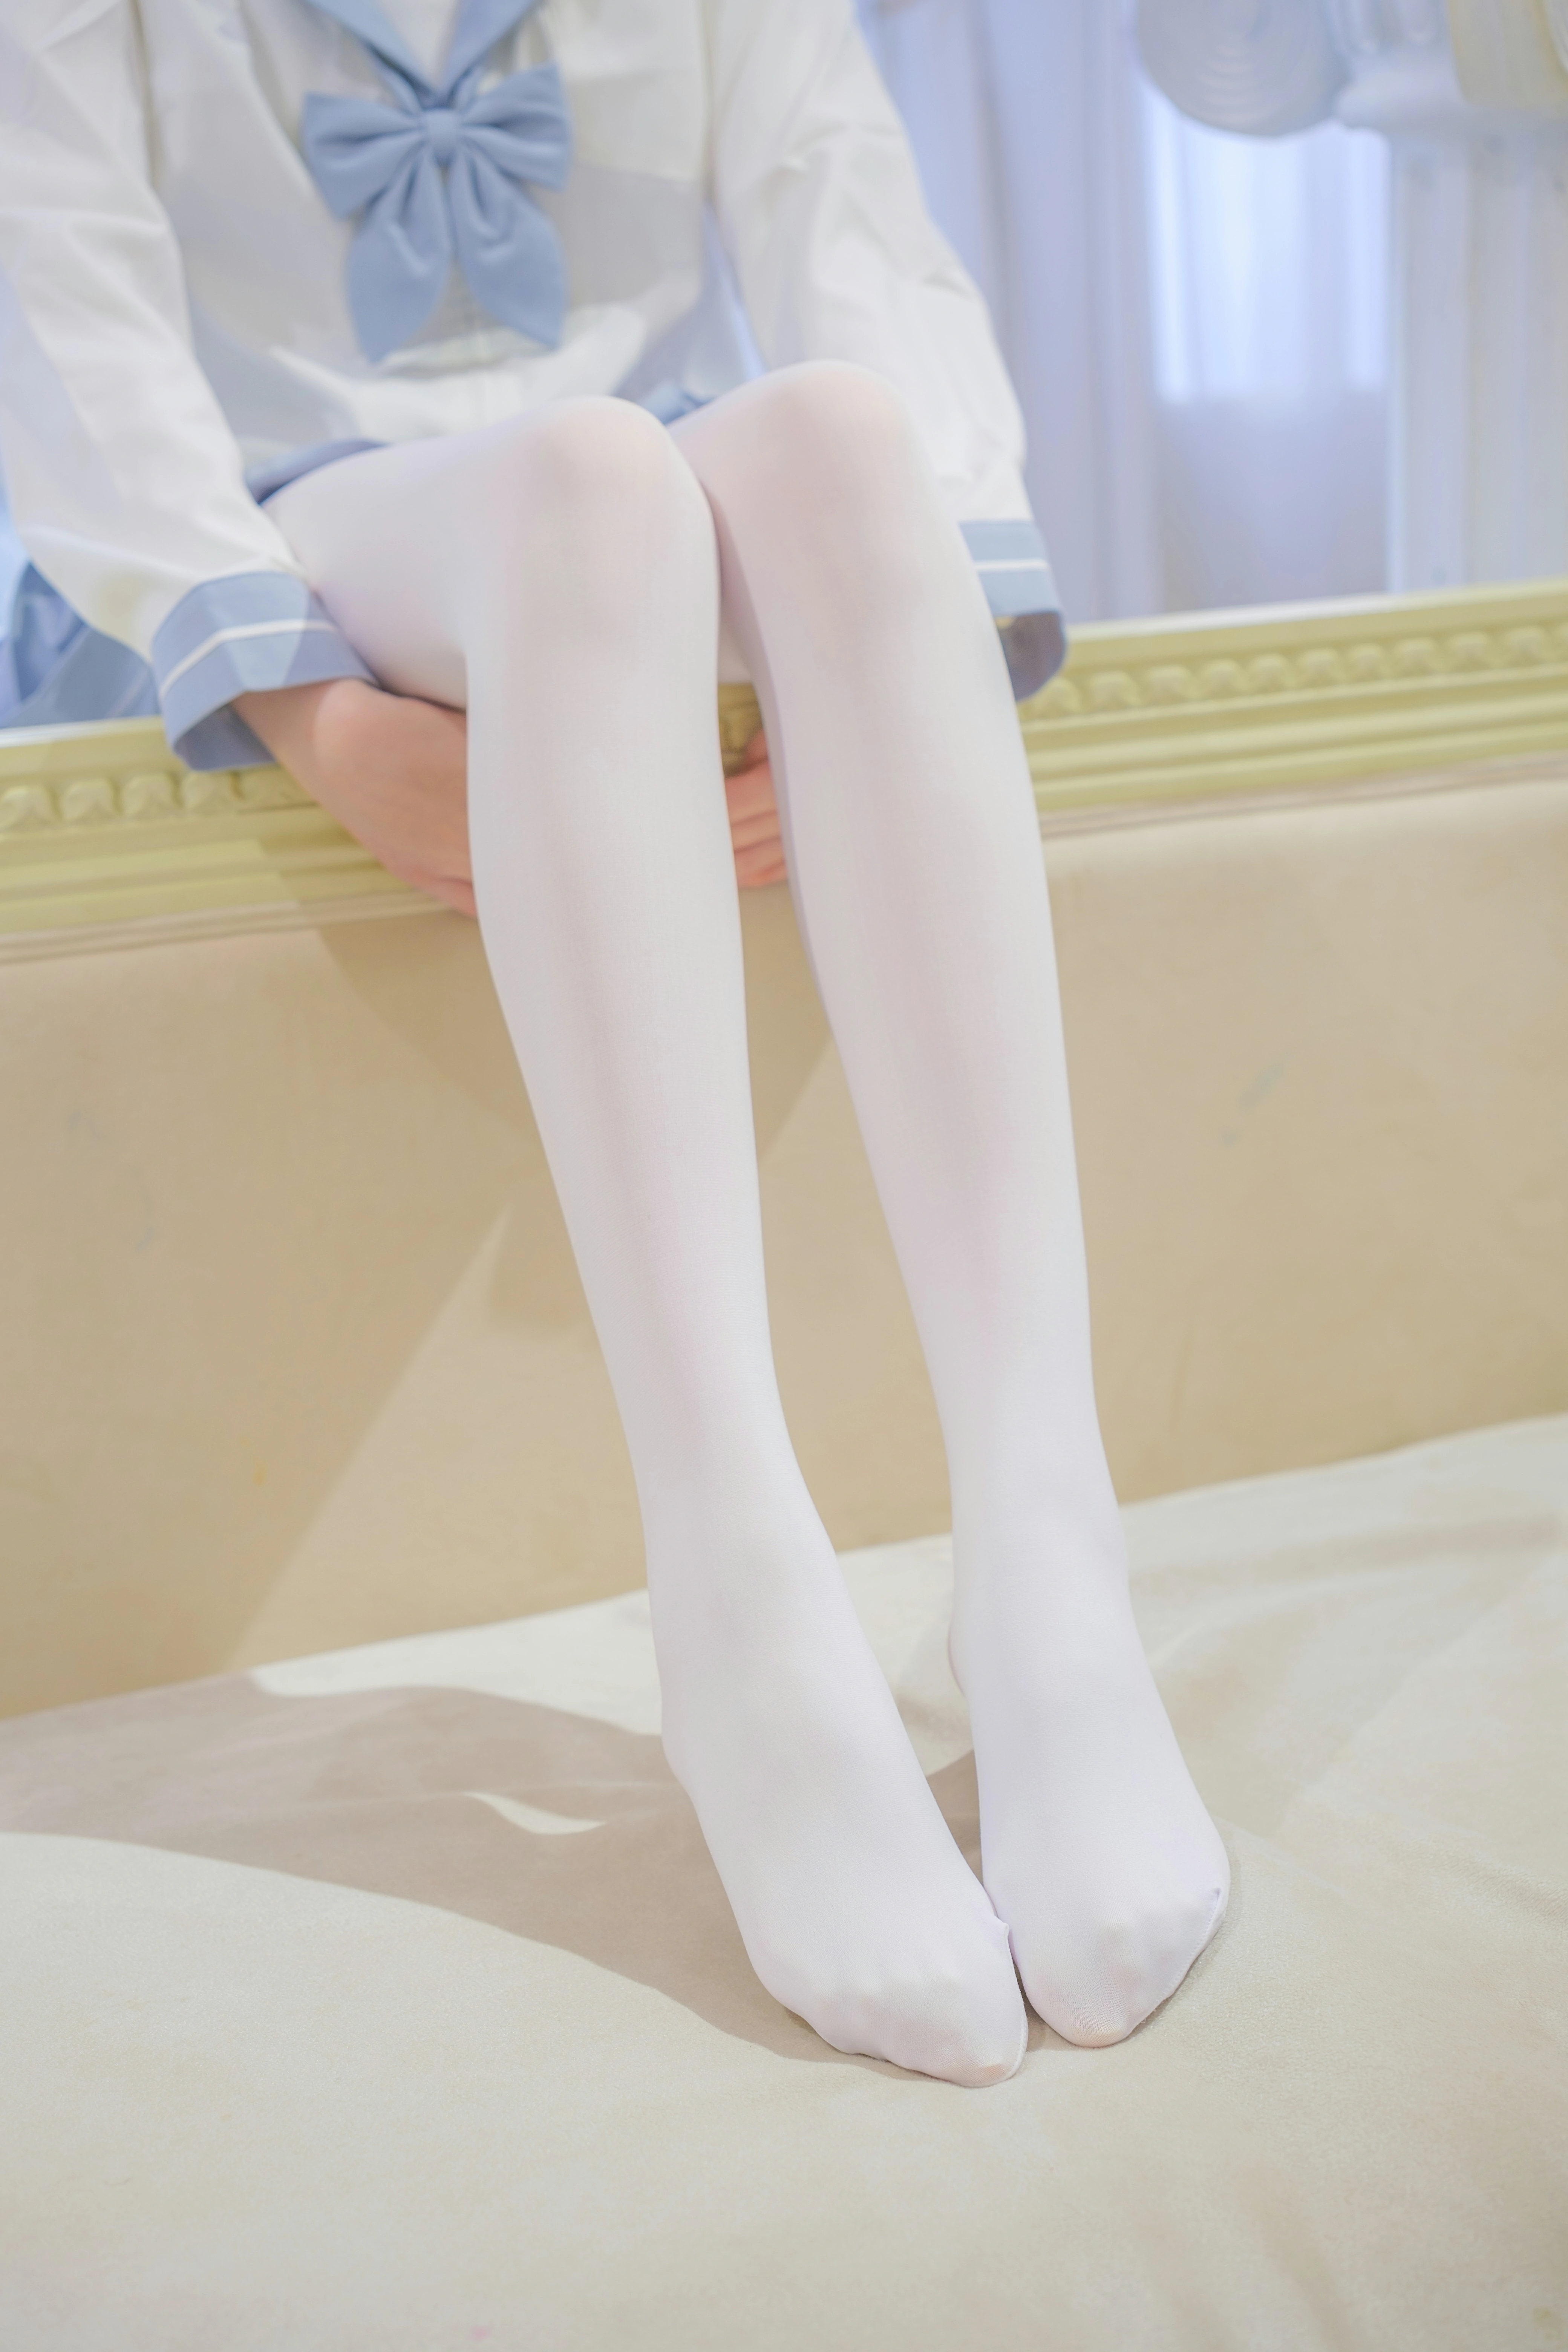 [森萝财团]内部VIP系列 微风-04 少女萝莉小学妹 白色JK制服与蓝色短裙加白色丝袜美腿私房写真集,0007